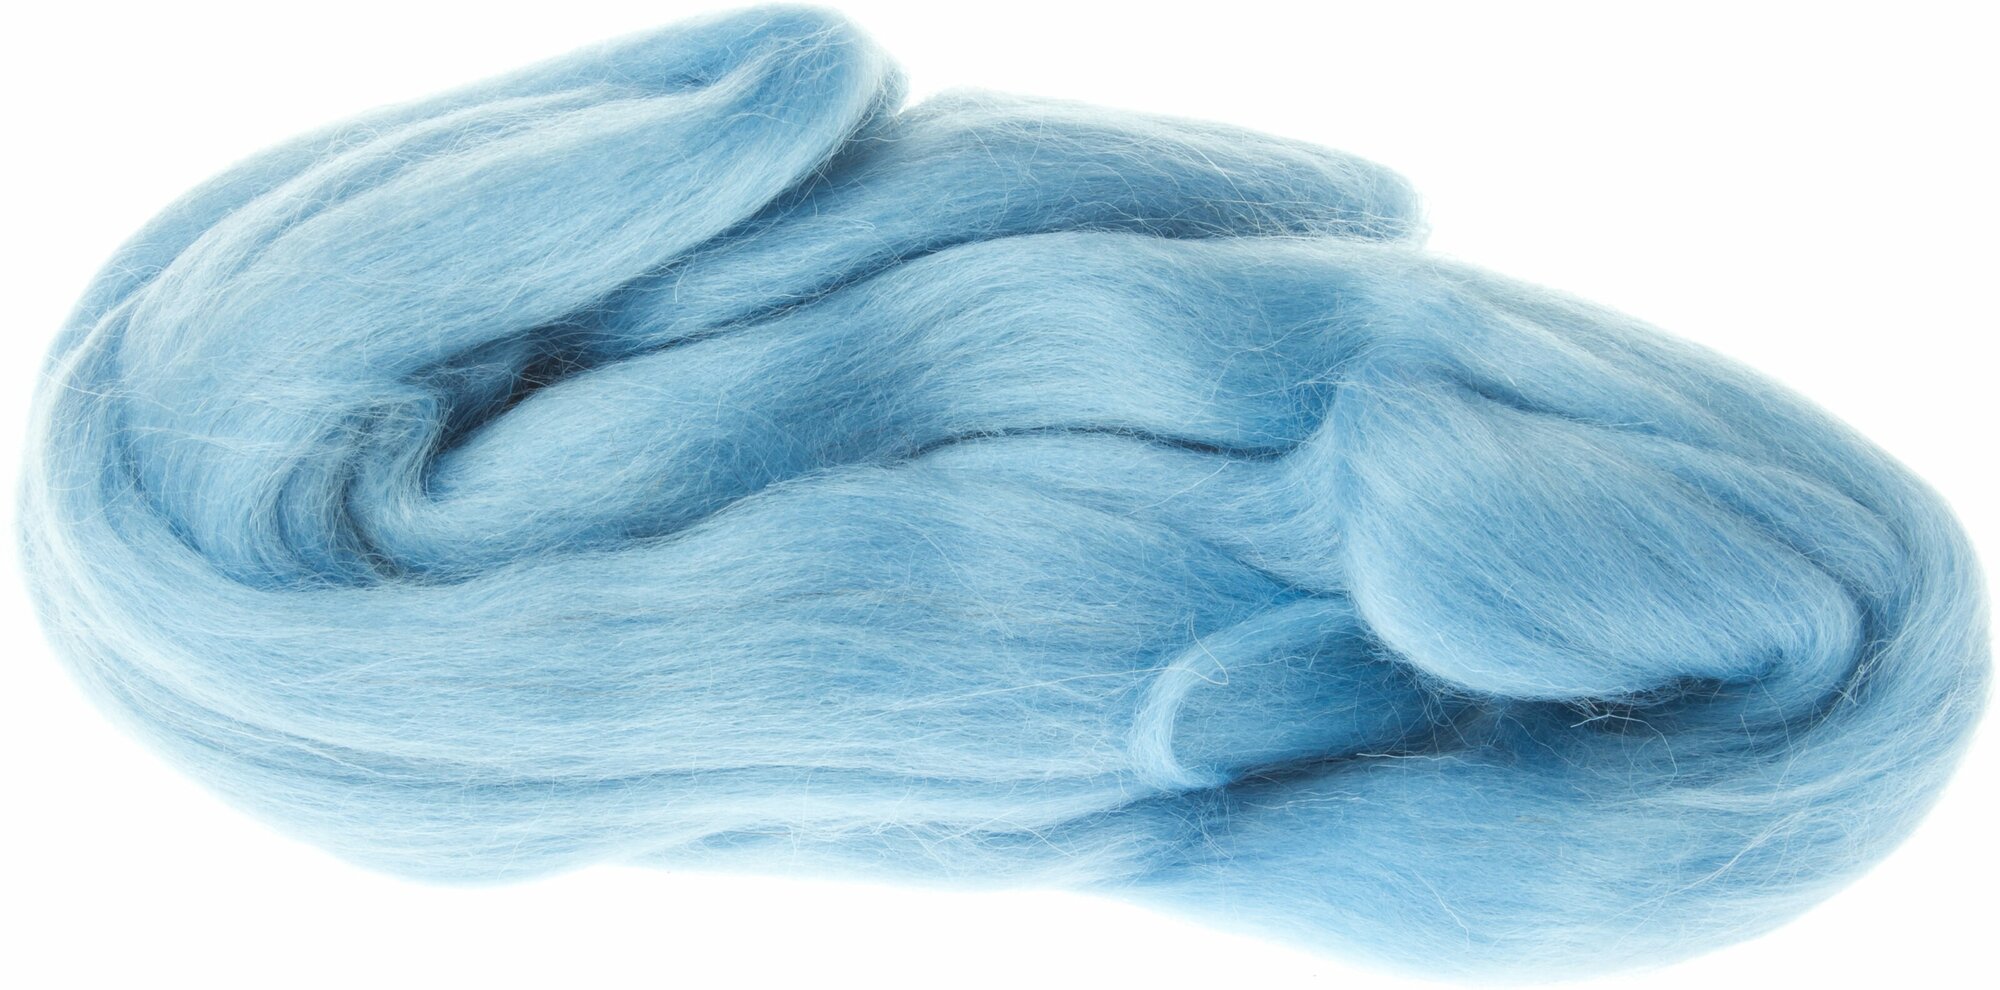 Шерсть для валяния камтекс полутонкая голубой (015), 100%шерсть, 50г, 1шт